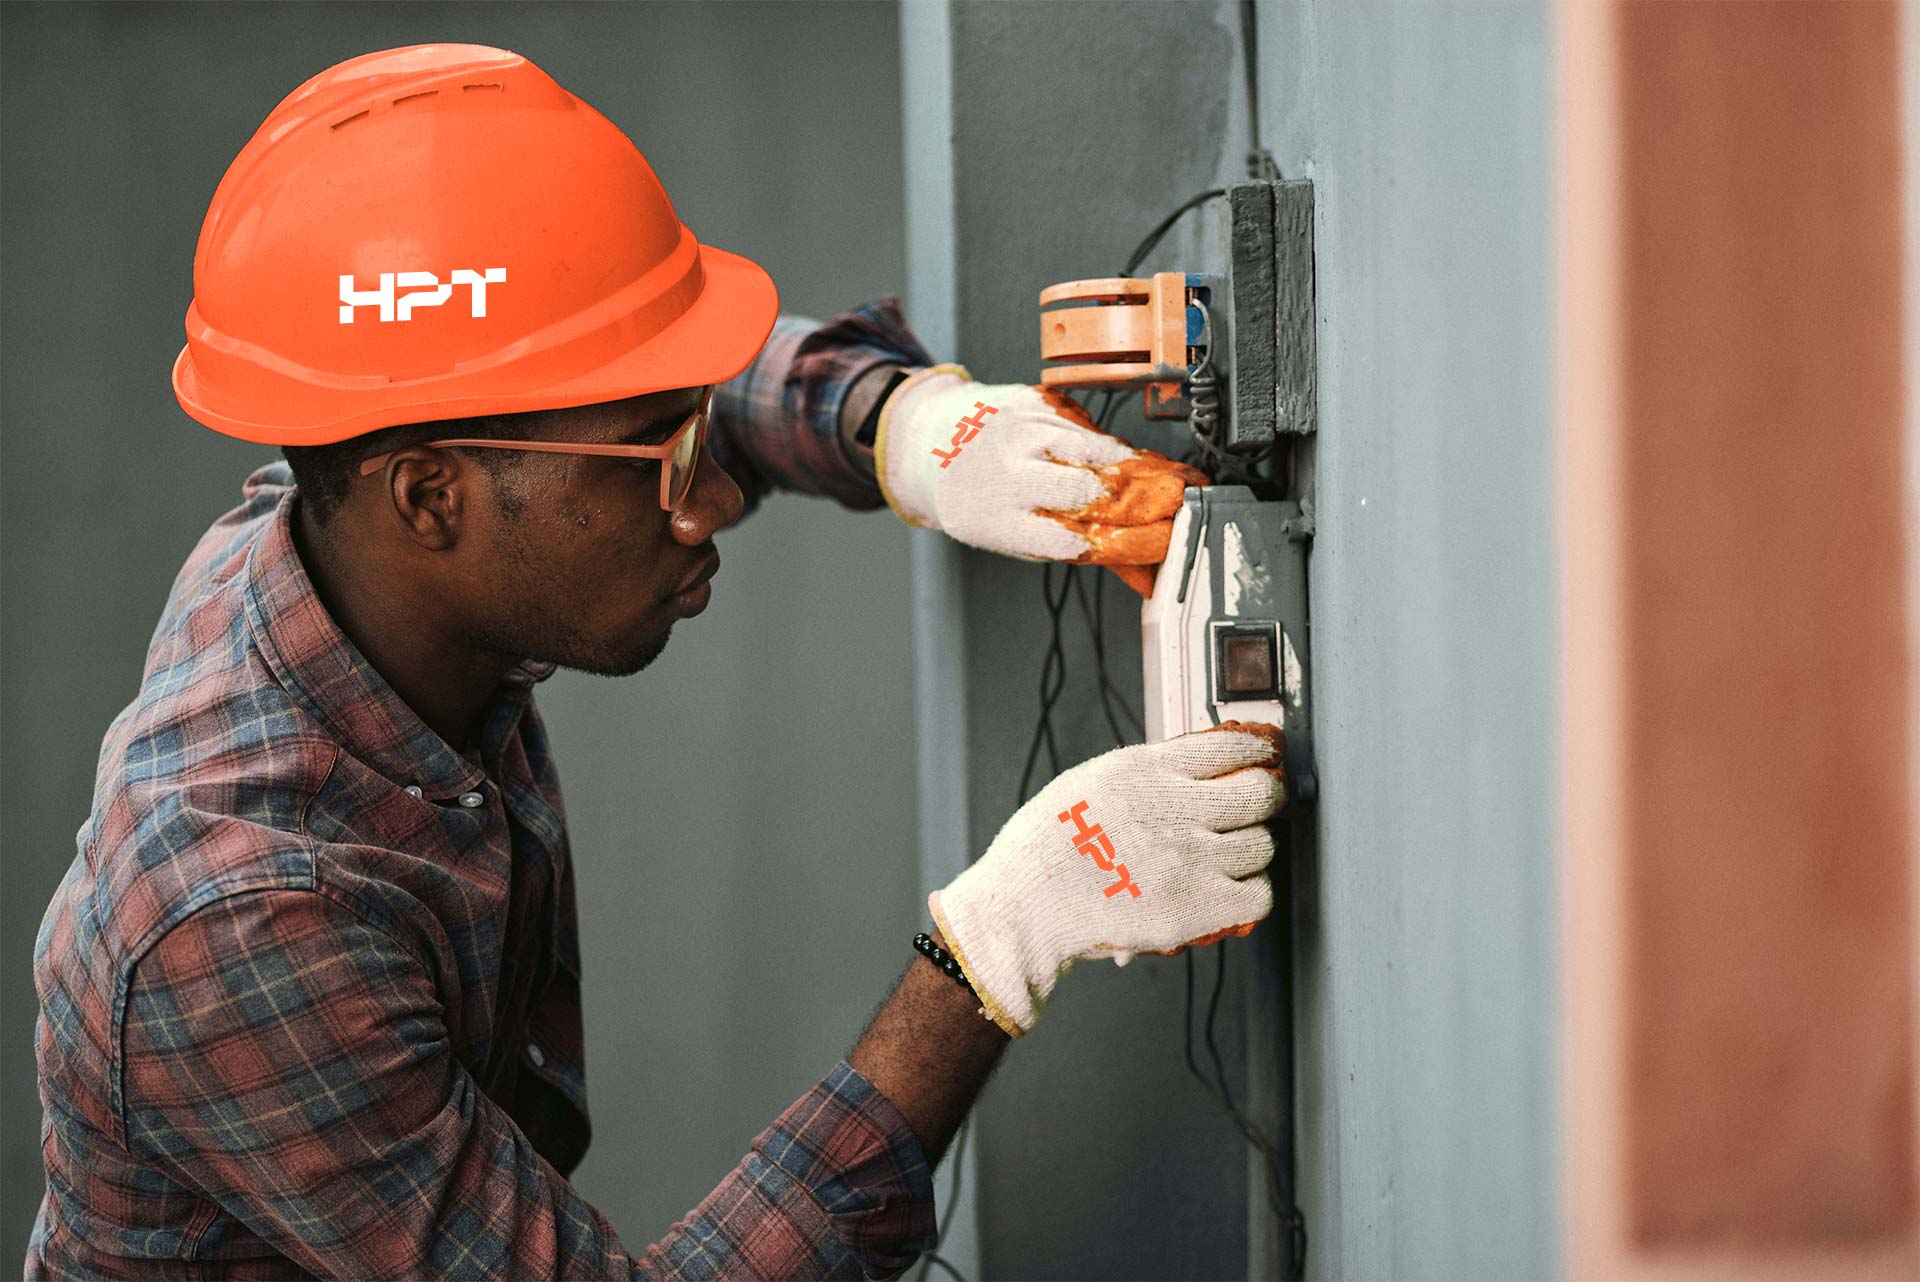 HPT-Mitarbeiter trägt Helm mit HPT-Logo